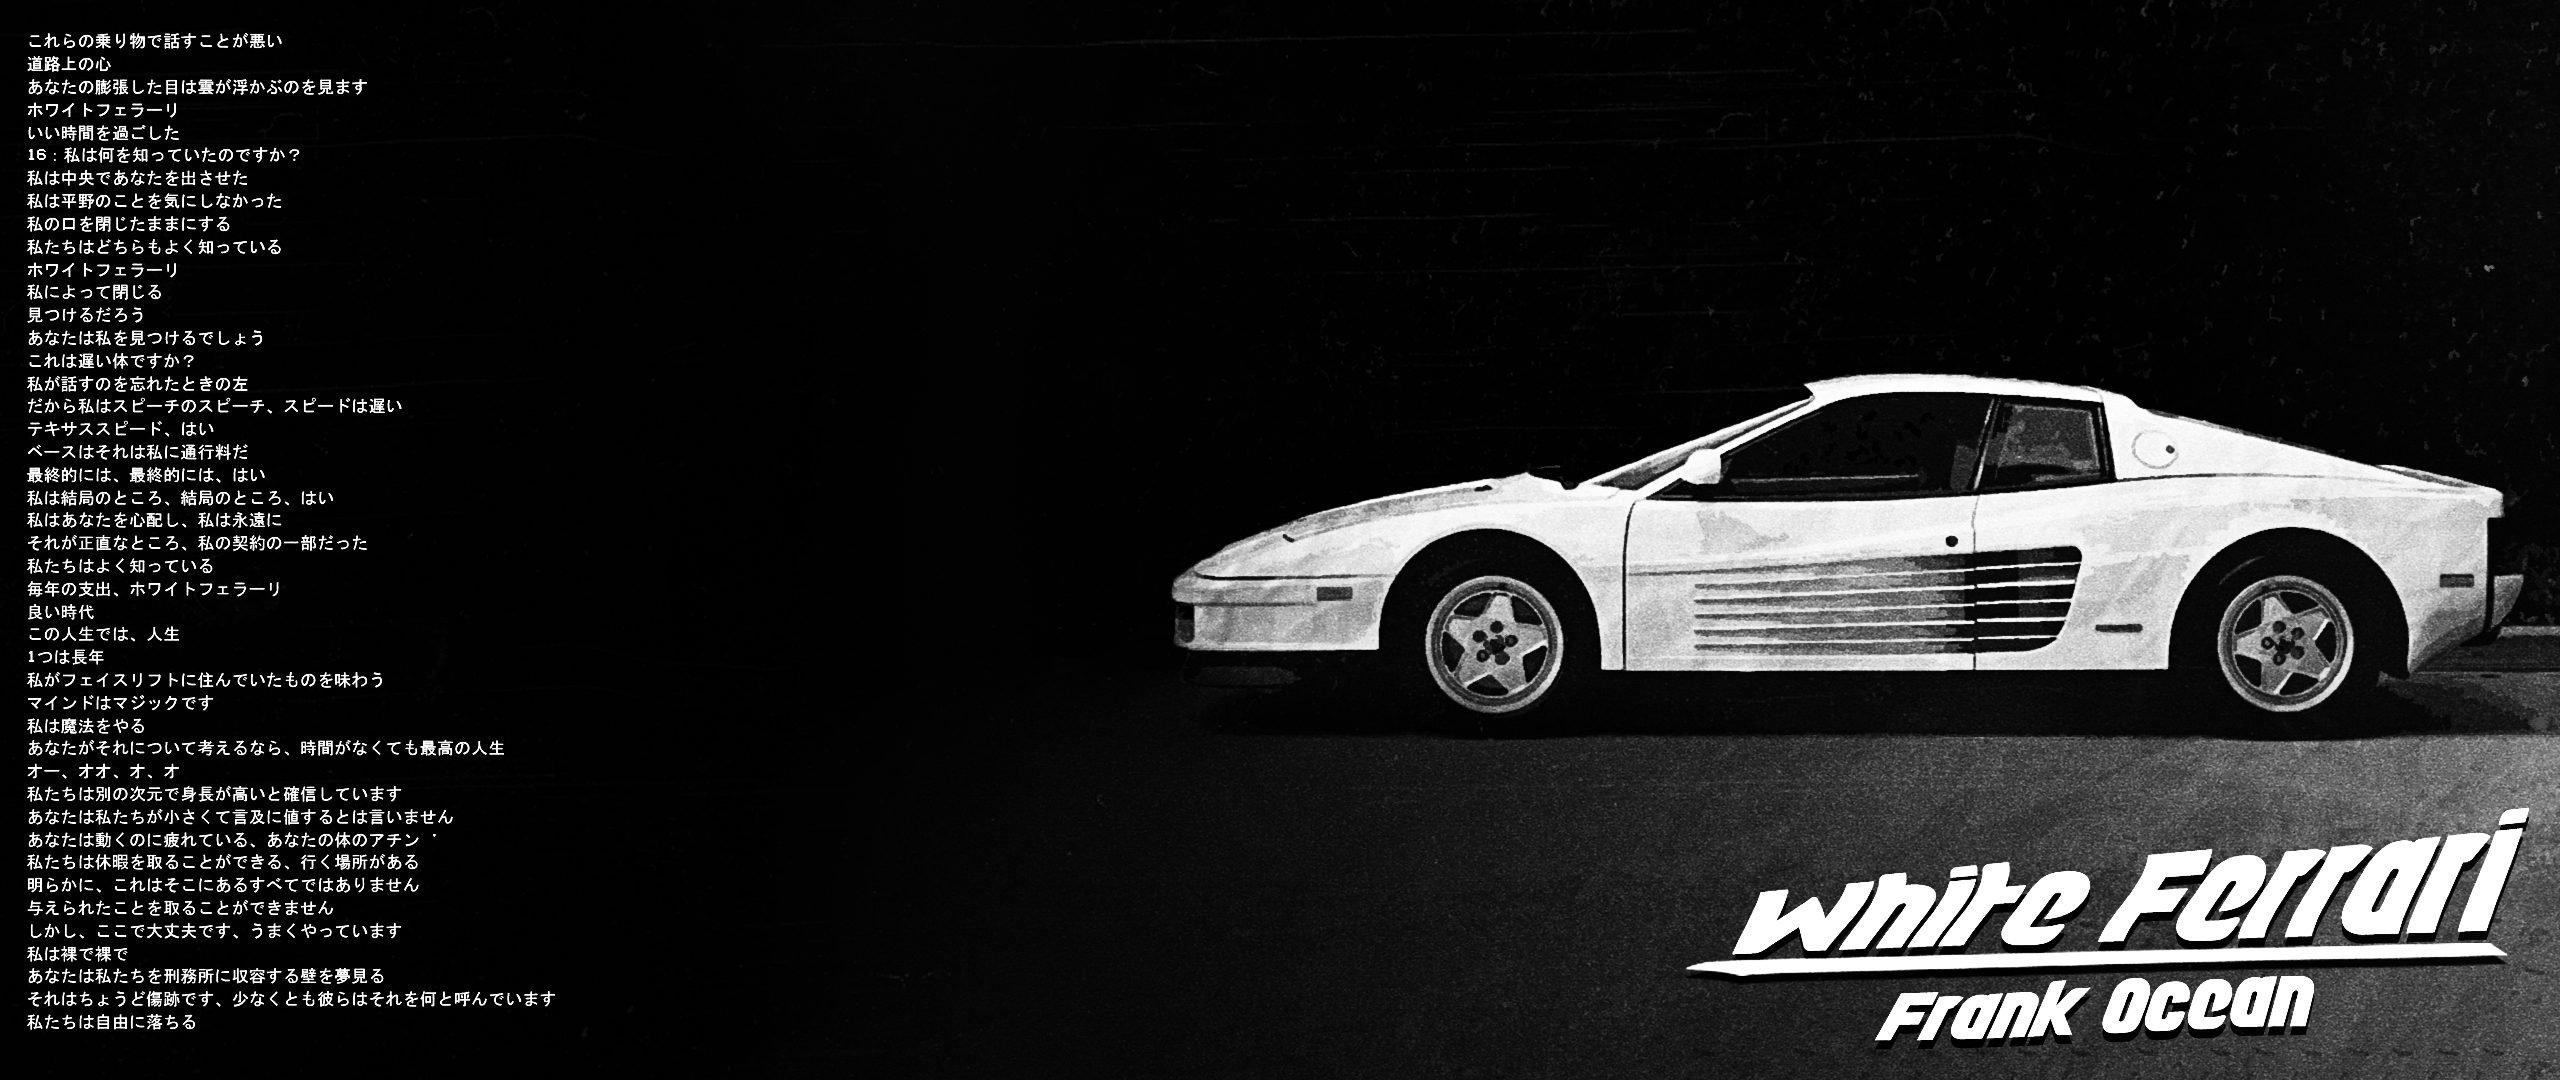 2560x1080 Ferrari màu trắng